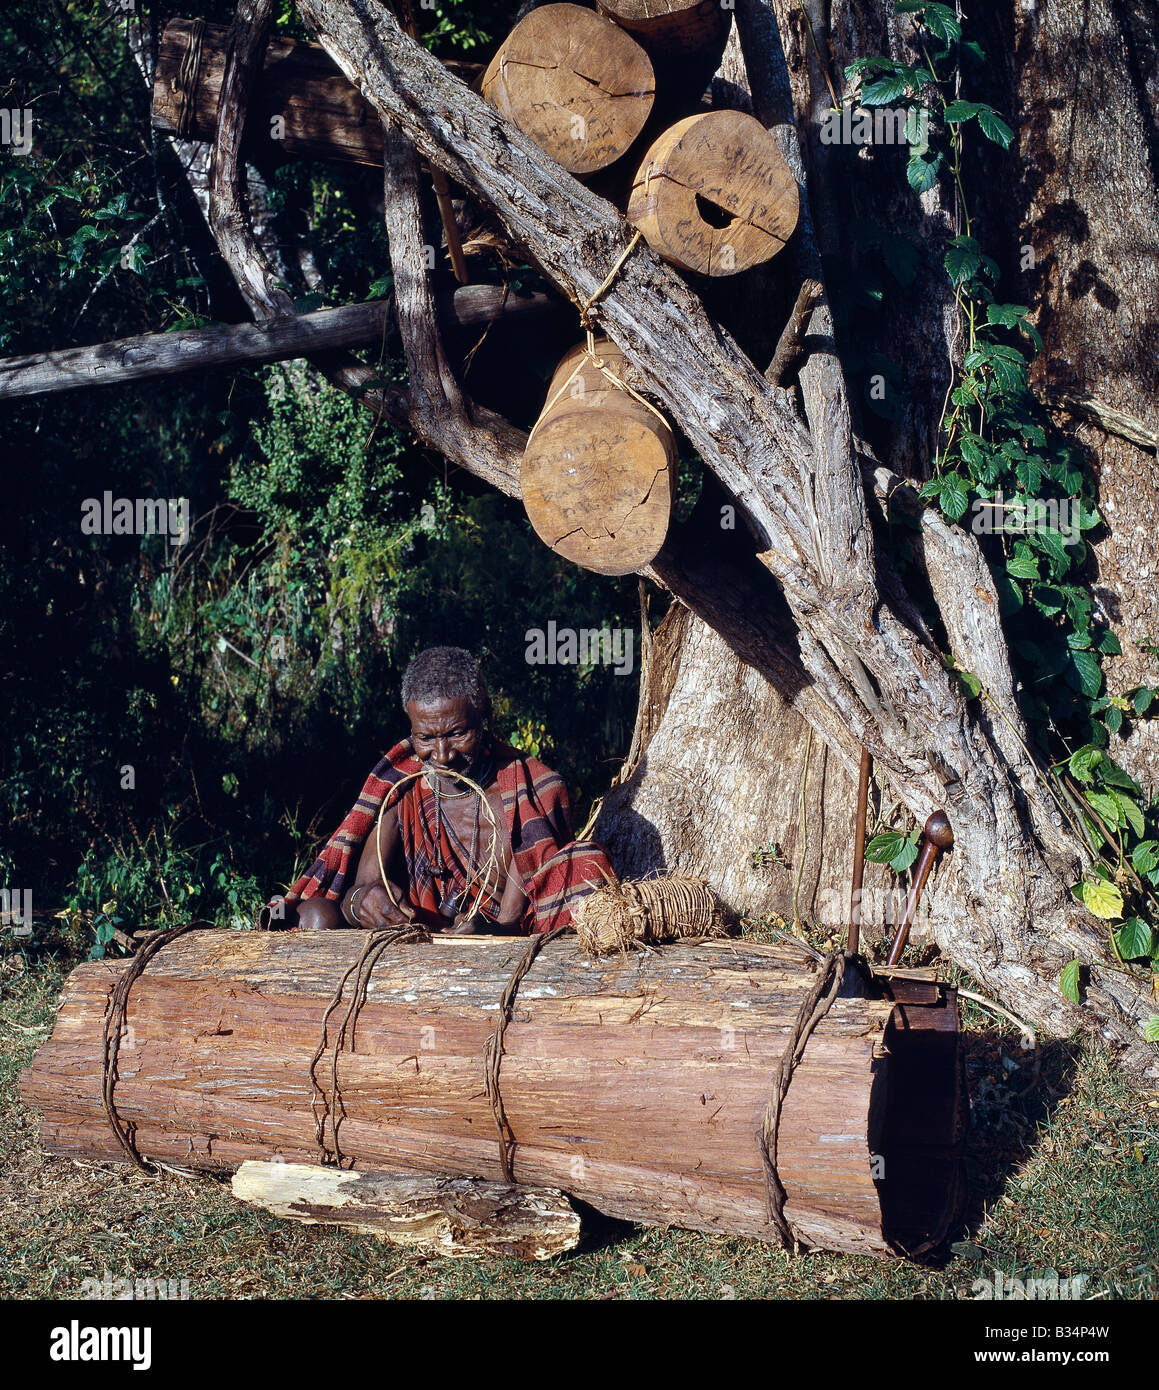 Kenya, Narok, Foresta Mau. Il Popolo Ogiek sono cacciatori-raccoglitori che  vivono nella foresta Mau. Raccolgono il miele per il consumo e la vendita  da alveari fanno da scavato logs. Qui, un vecchio